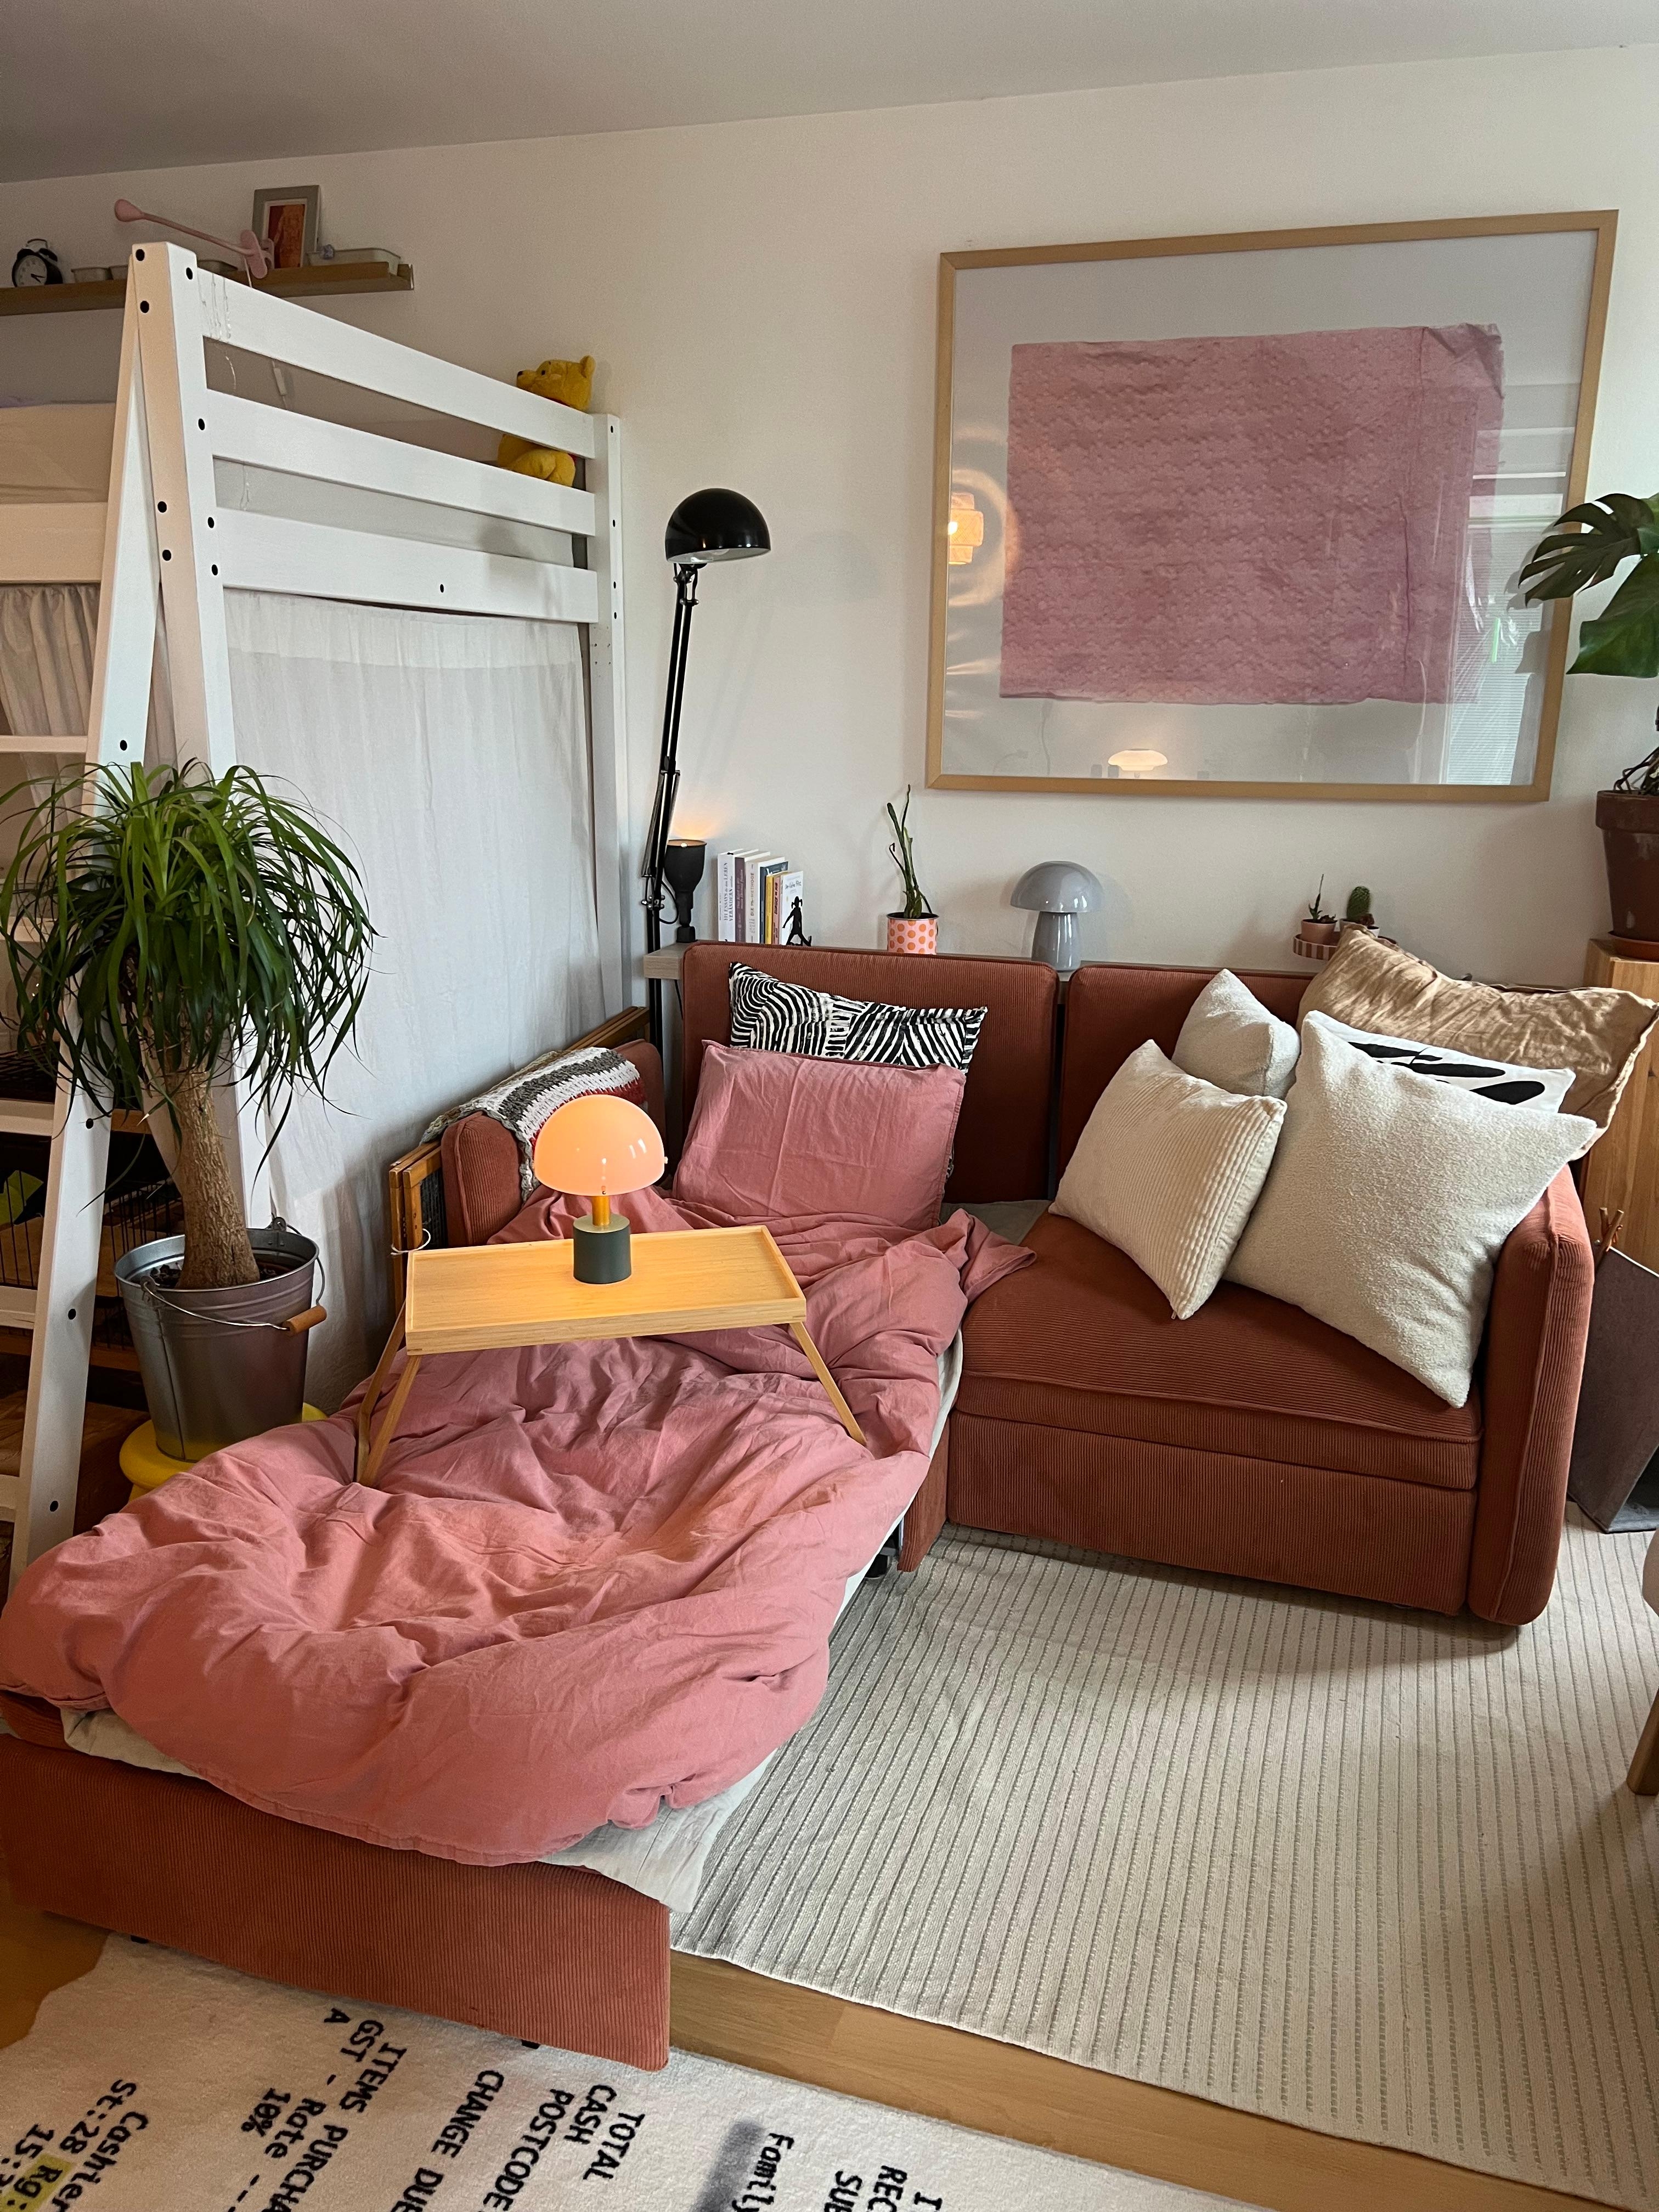 Selbst in der kleinsten Wohnung ist Platz für ein Gästebett.
#kleinewohnung #gästebett #stauraum #ausziehcouch #couch #ikea